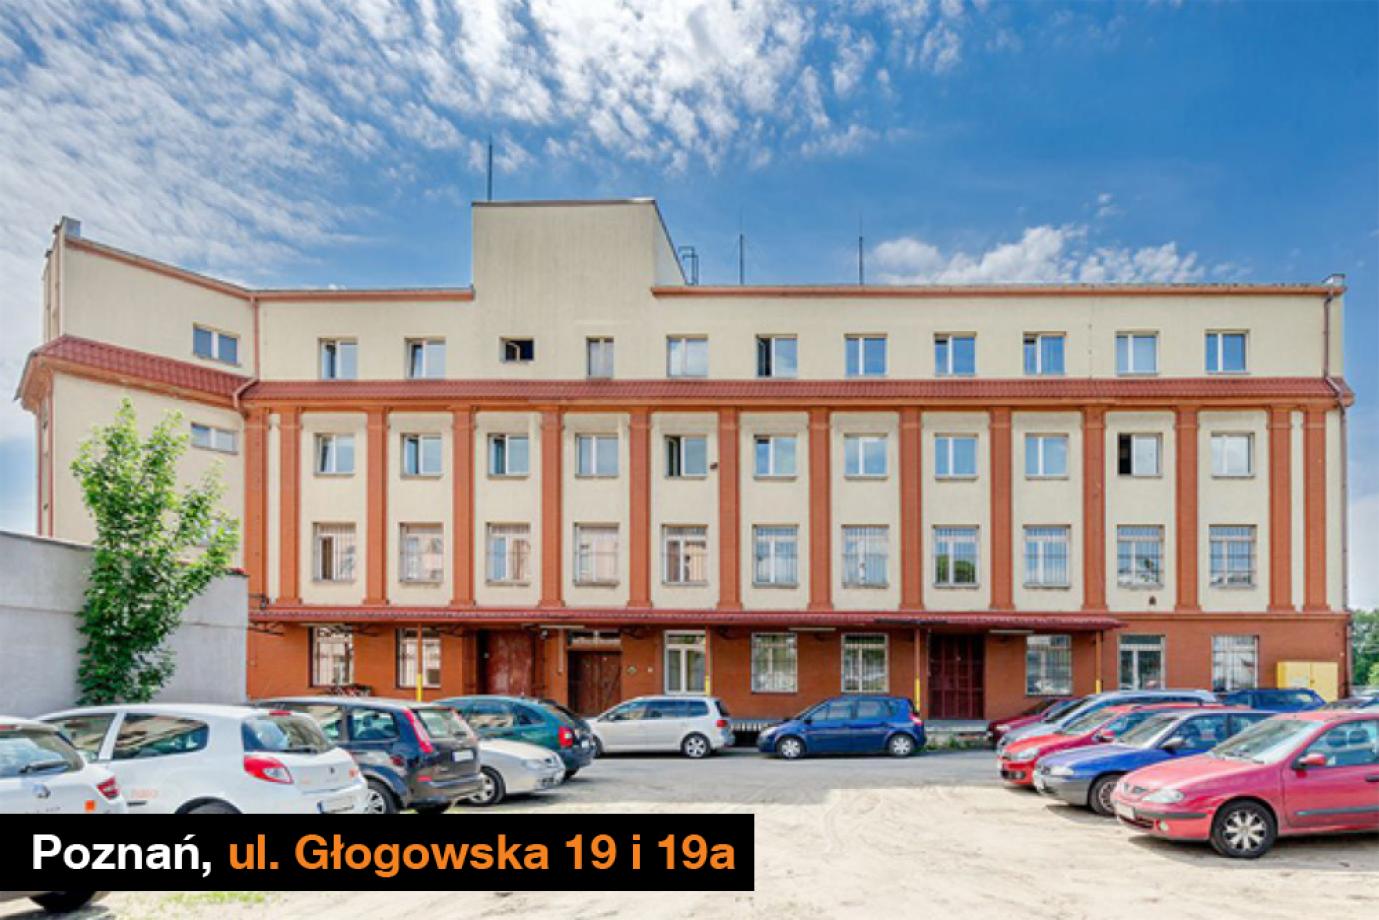 Poznań, ul. Głogowska 19 i 19a